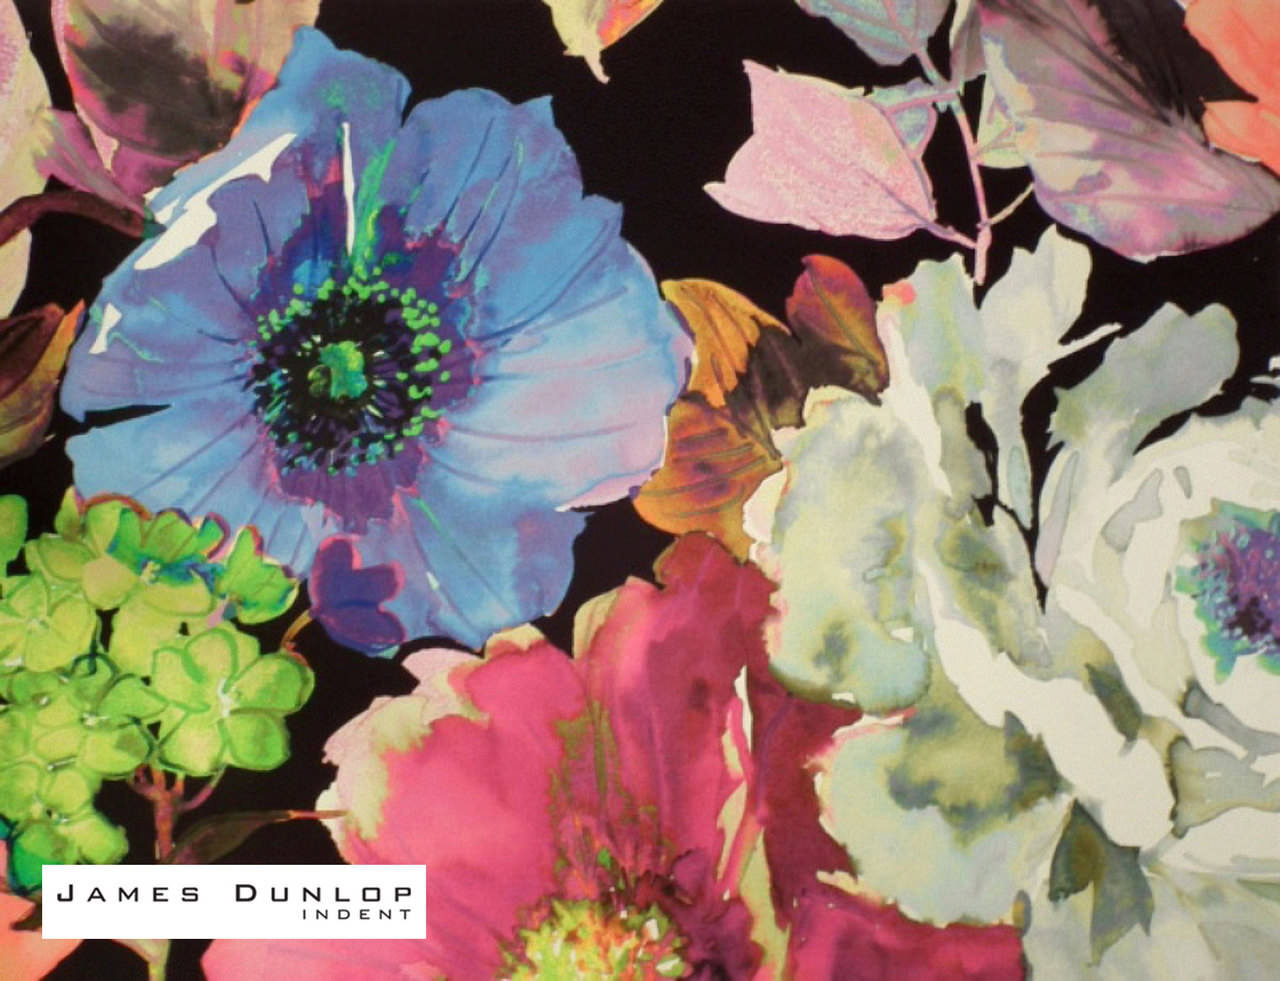 James Dunlop Indent - Ceusa Dinda , HD Wallpaper & Backgrounds